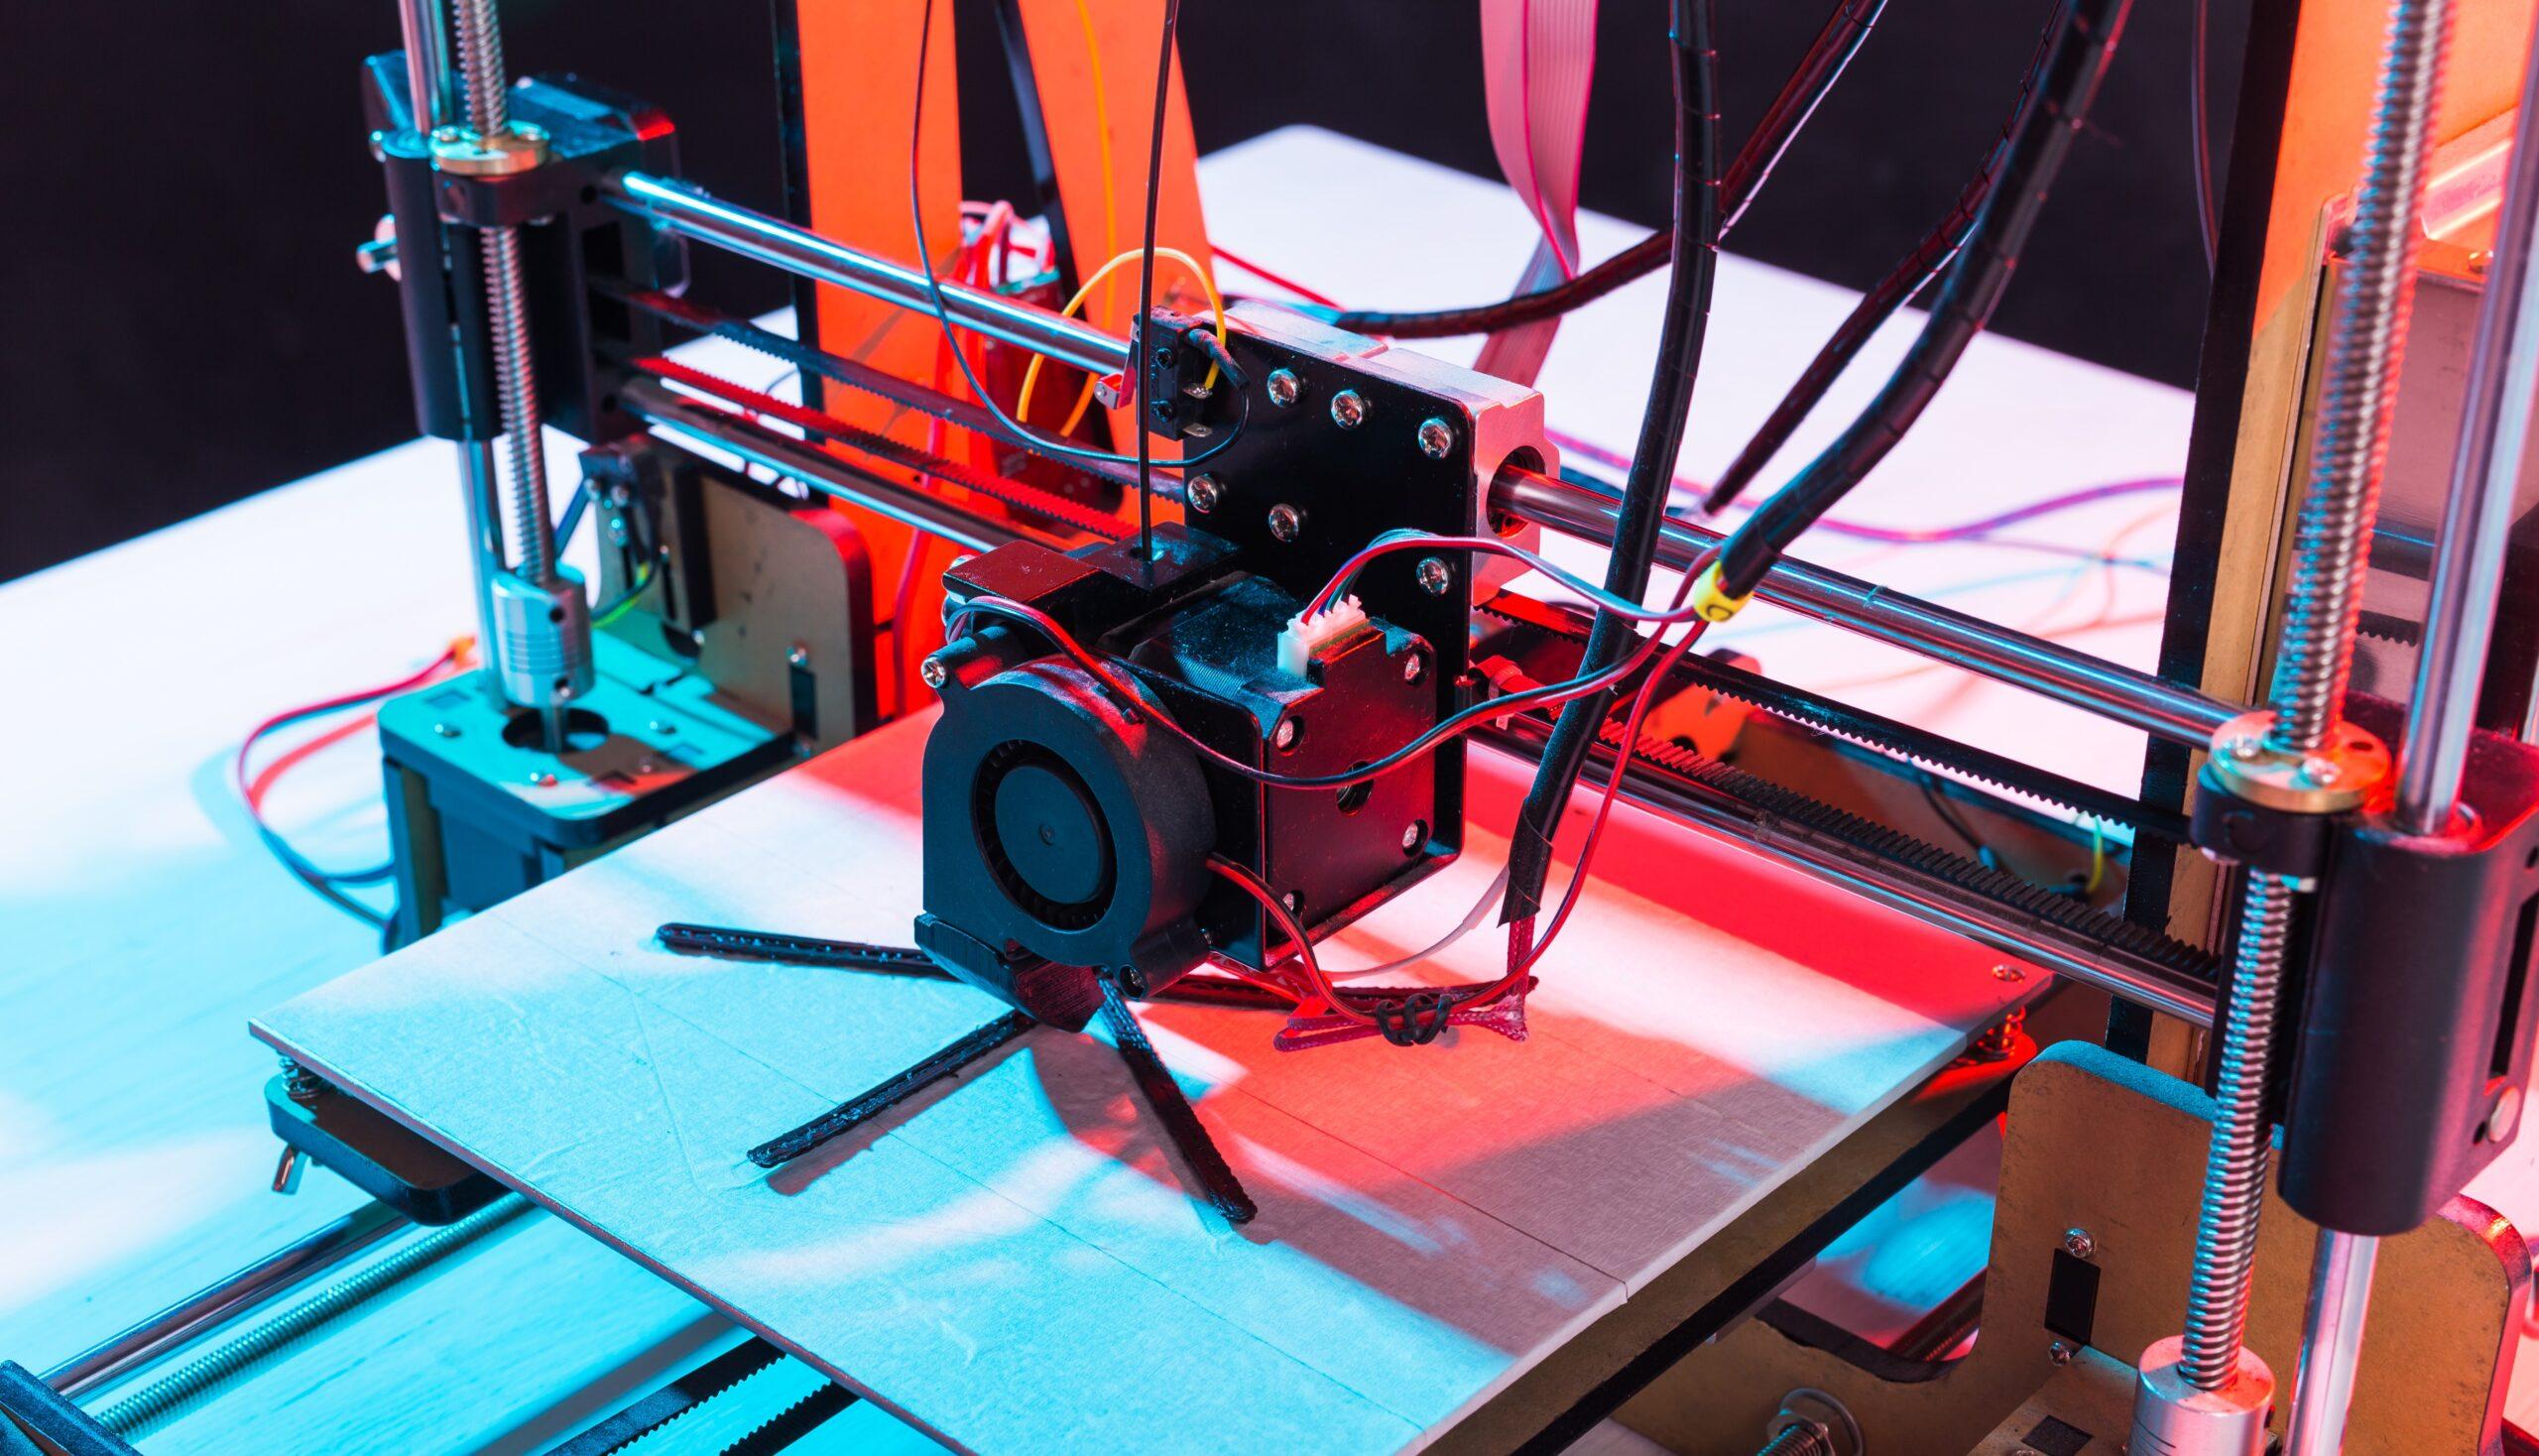 Al momento stai visualizzando Stampa 3D: come ottimizzare la velocità della stampante?